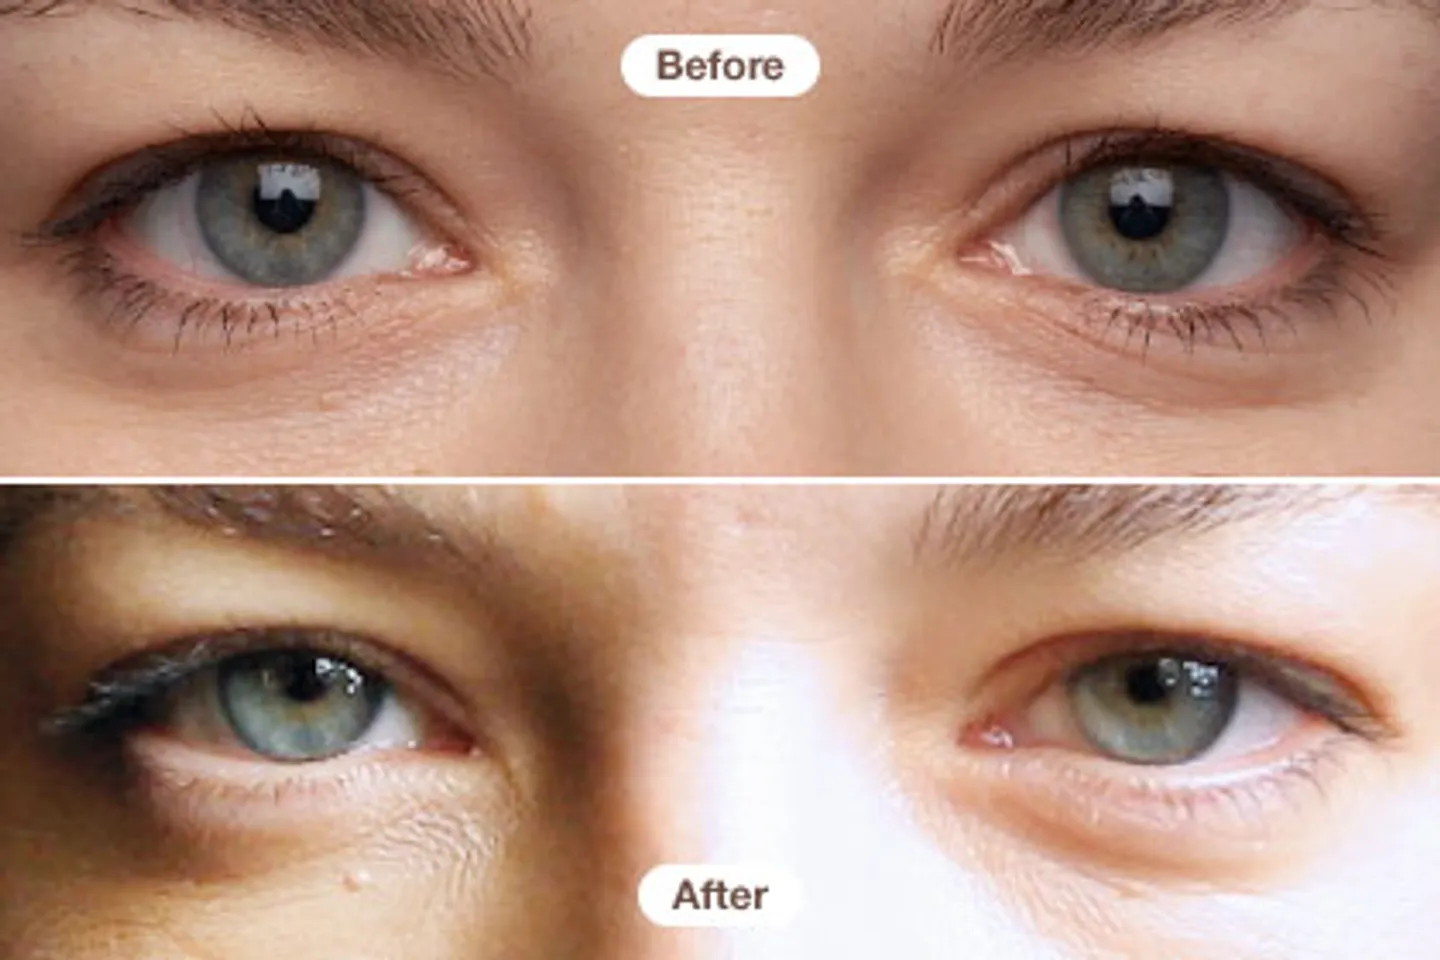 Kem mắt RoC giải quyết các vấn đề nhăn mắt và quầng thâm, mang lại hiệu quả giảm quầng thâm cùng bọng sau khoảng 1 tuần, còn nếp nhăn là sau khoảng 3 tháng